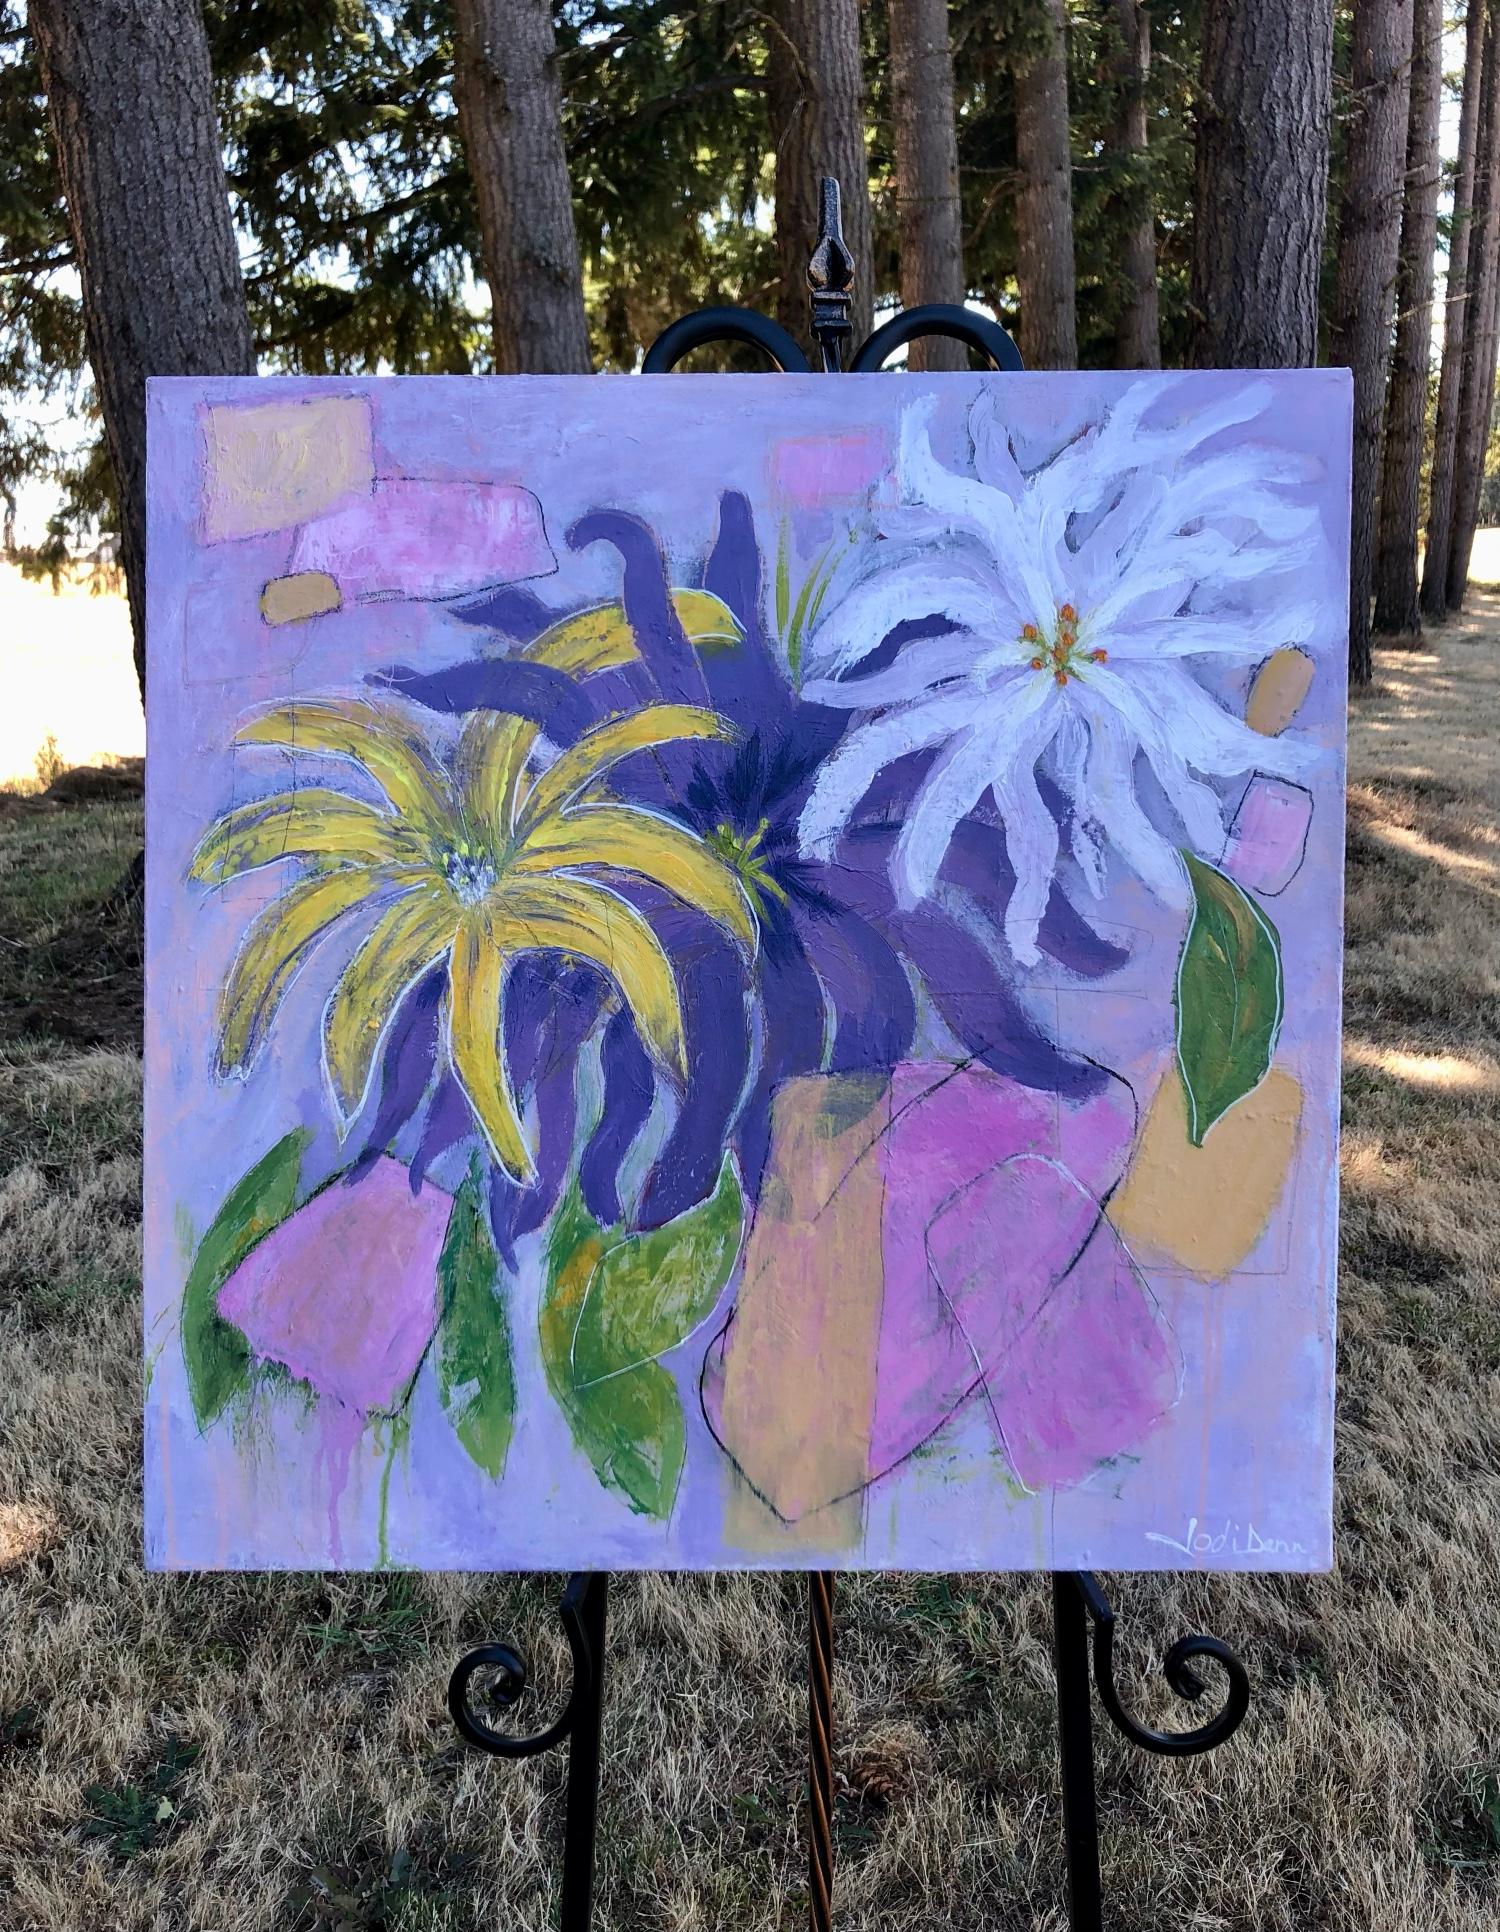 <p>Kommentare des Künstlers<br>In dem verspielten Werk der Künstlerin Jodi Dann gedeihen ausdrucksstarke Dahlien. Die gelben, violetten und weißen Blüten sprießen wunderschön vor einem abstrakten Hintergrund. 